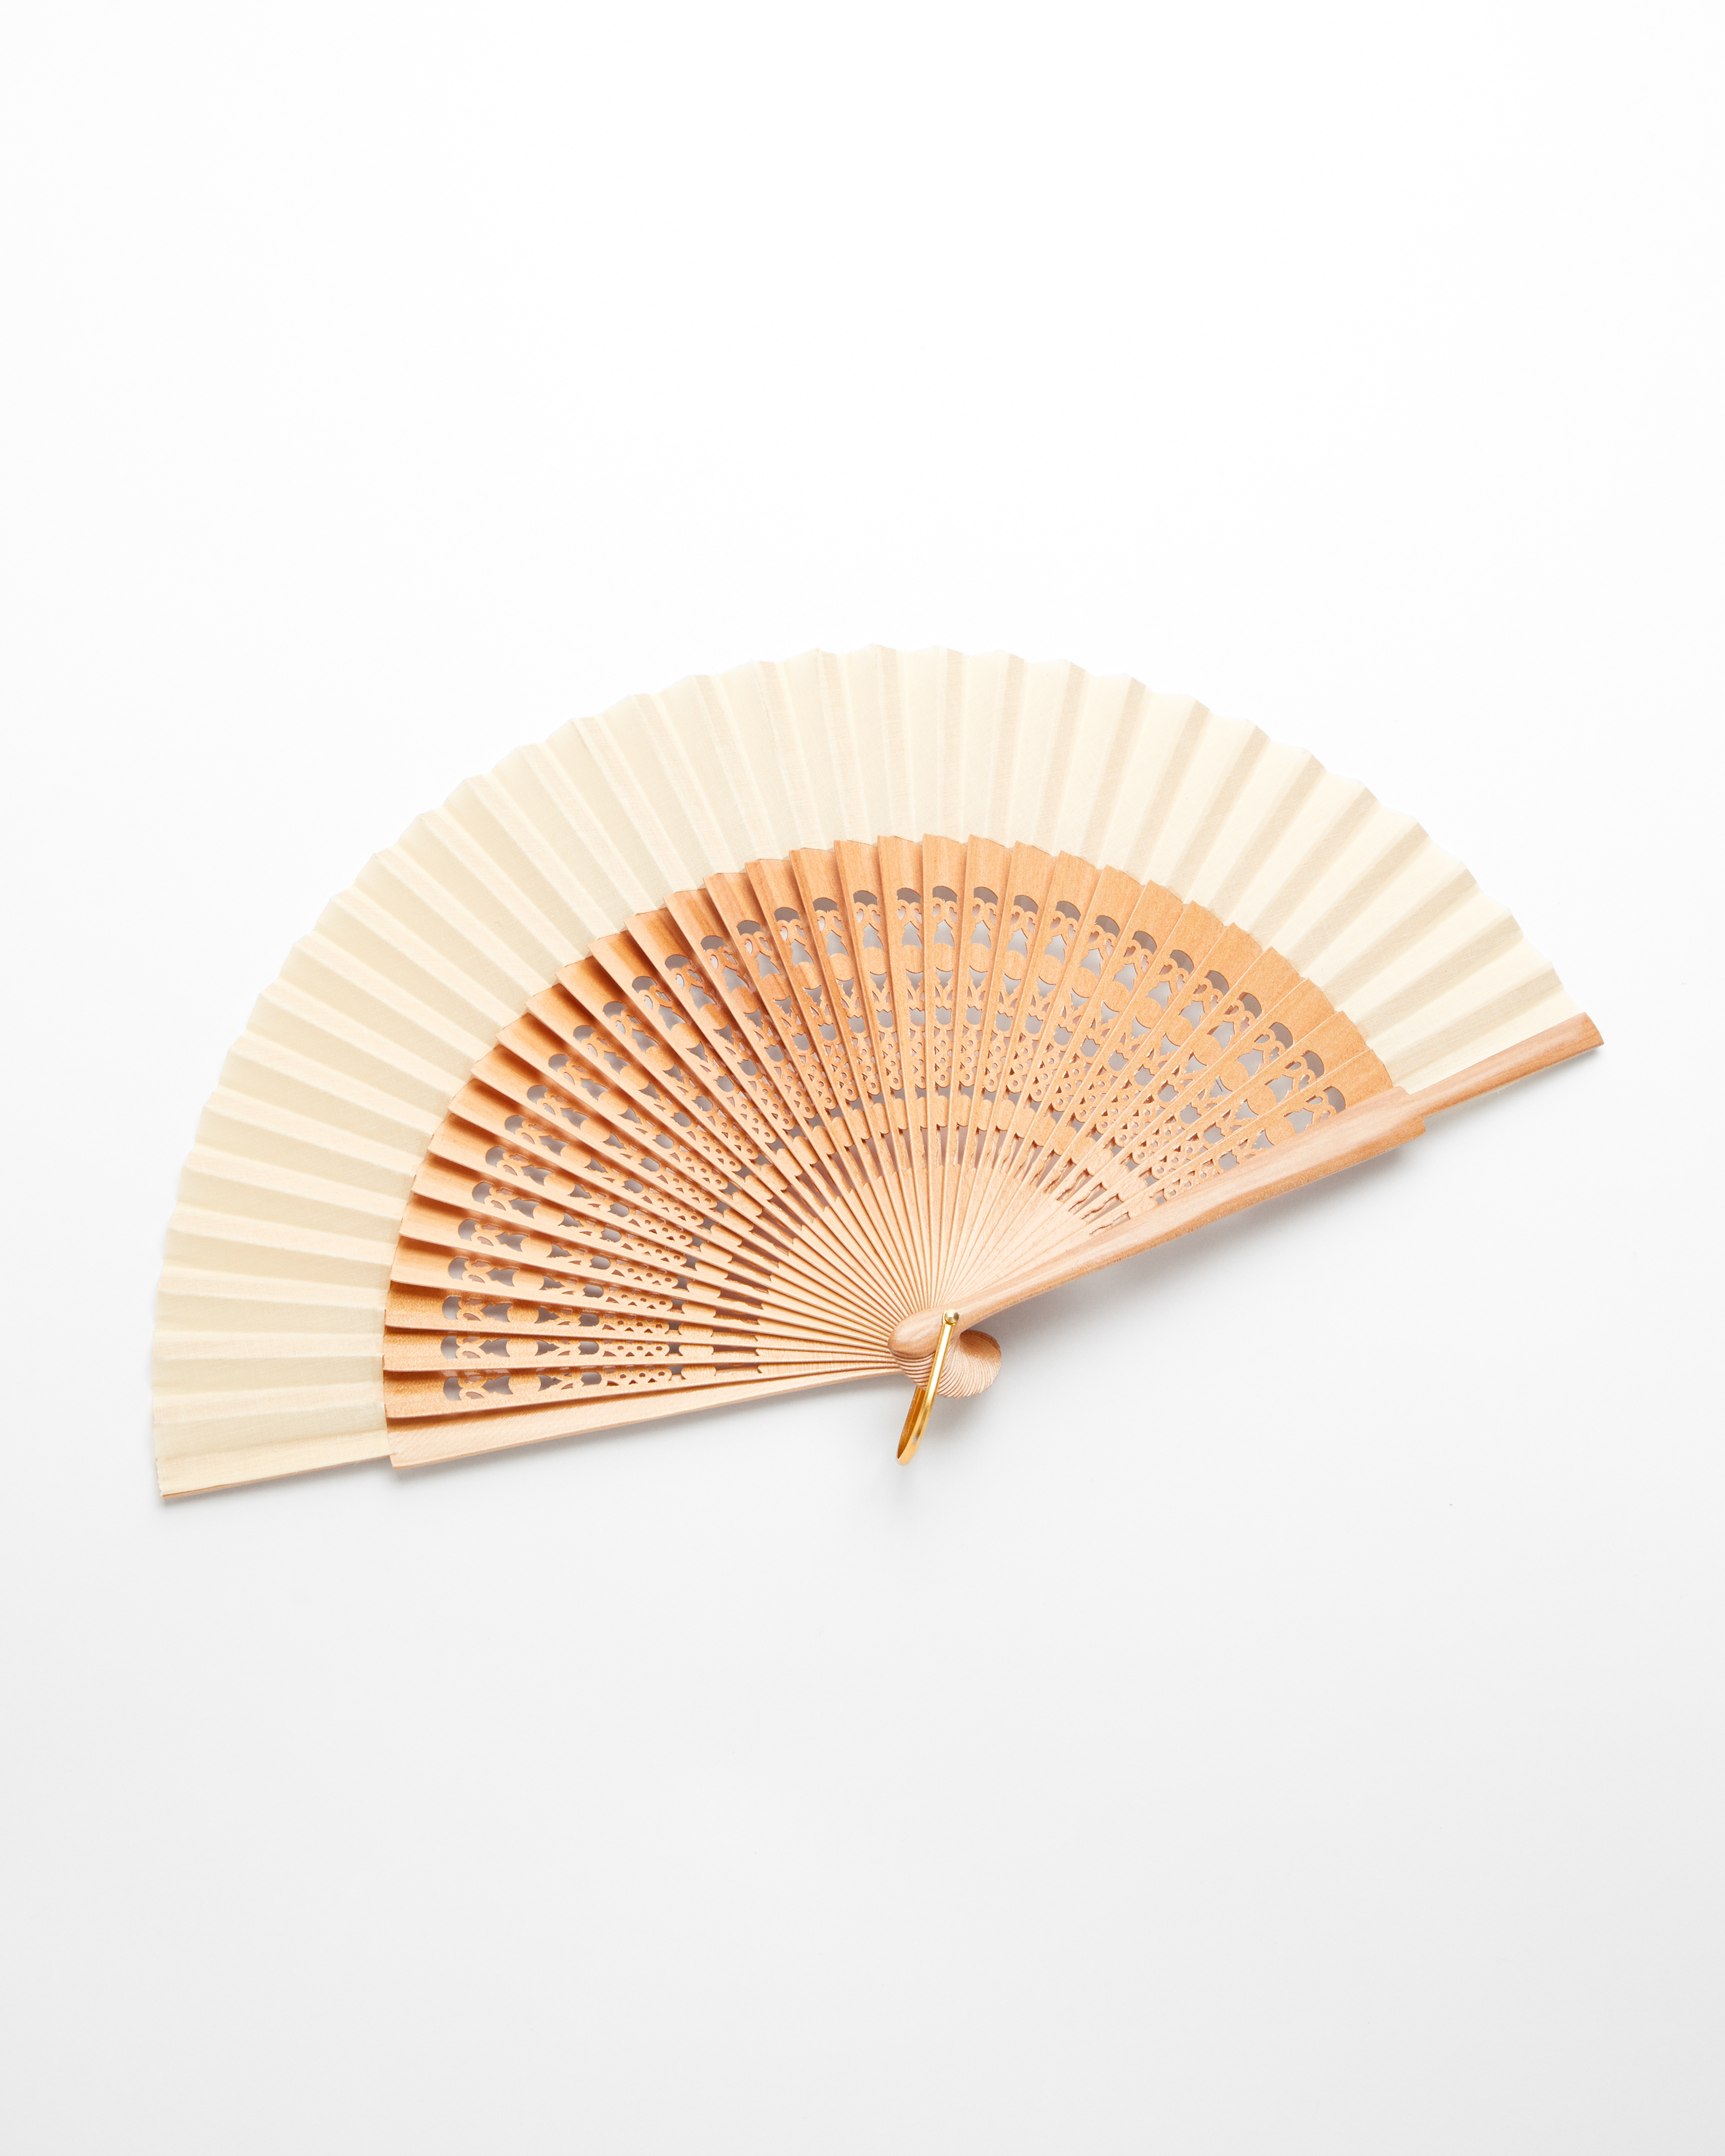 Cutwork wooden fan